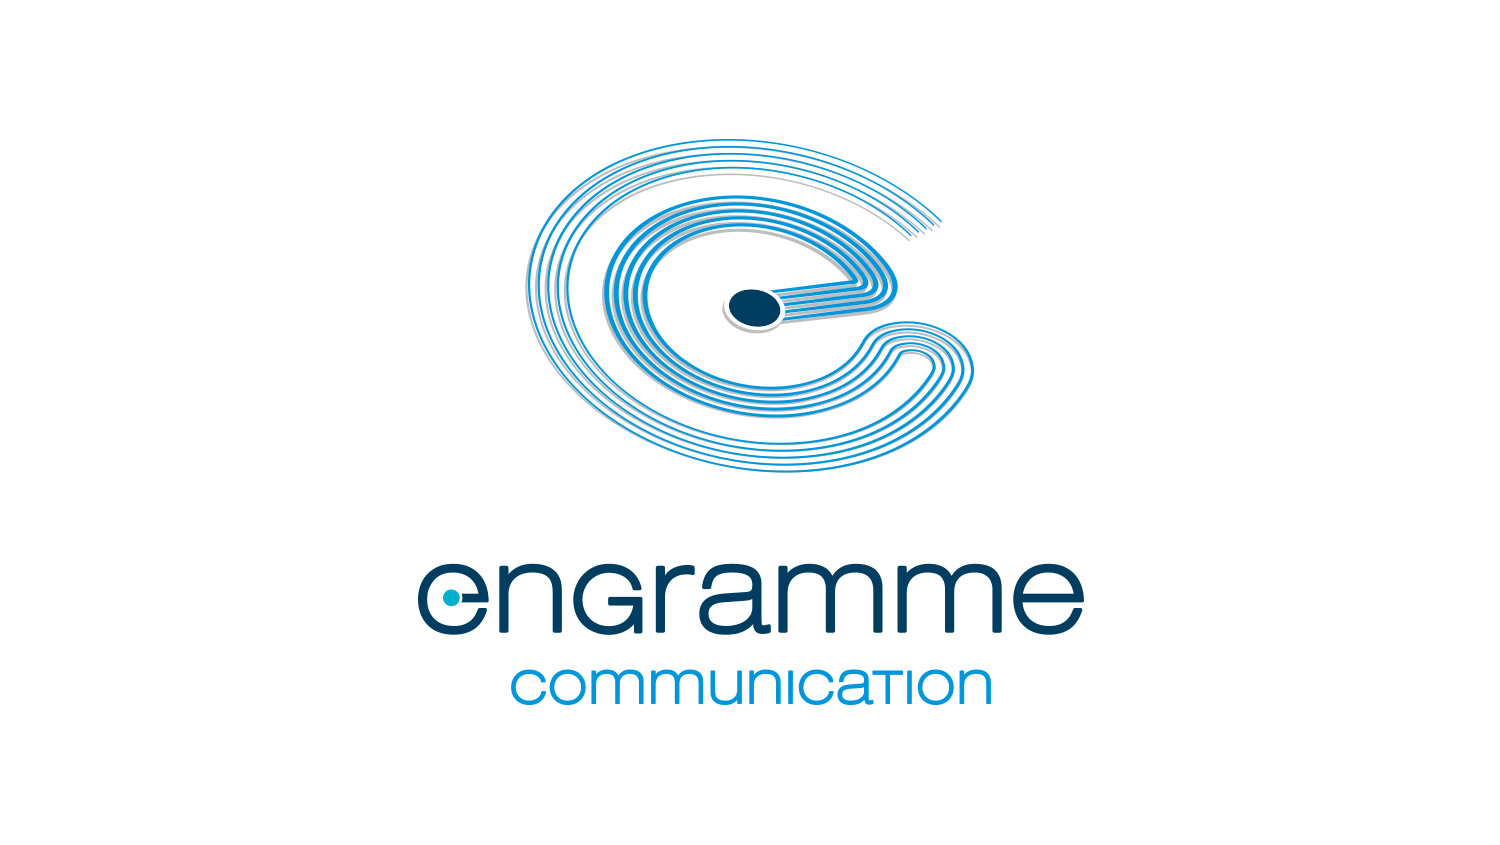 Engramme Communication-image de marque